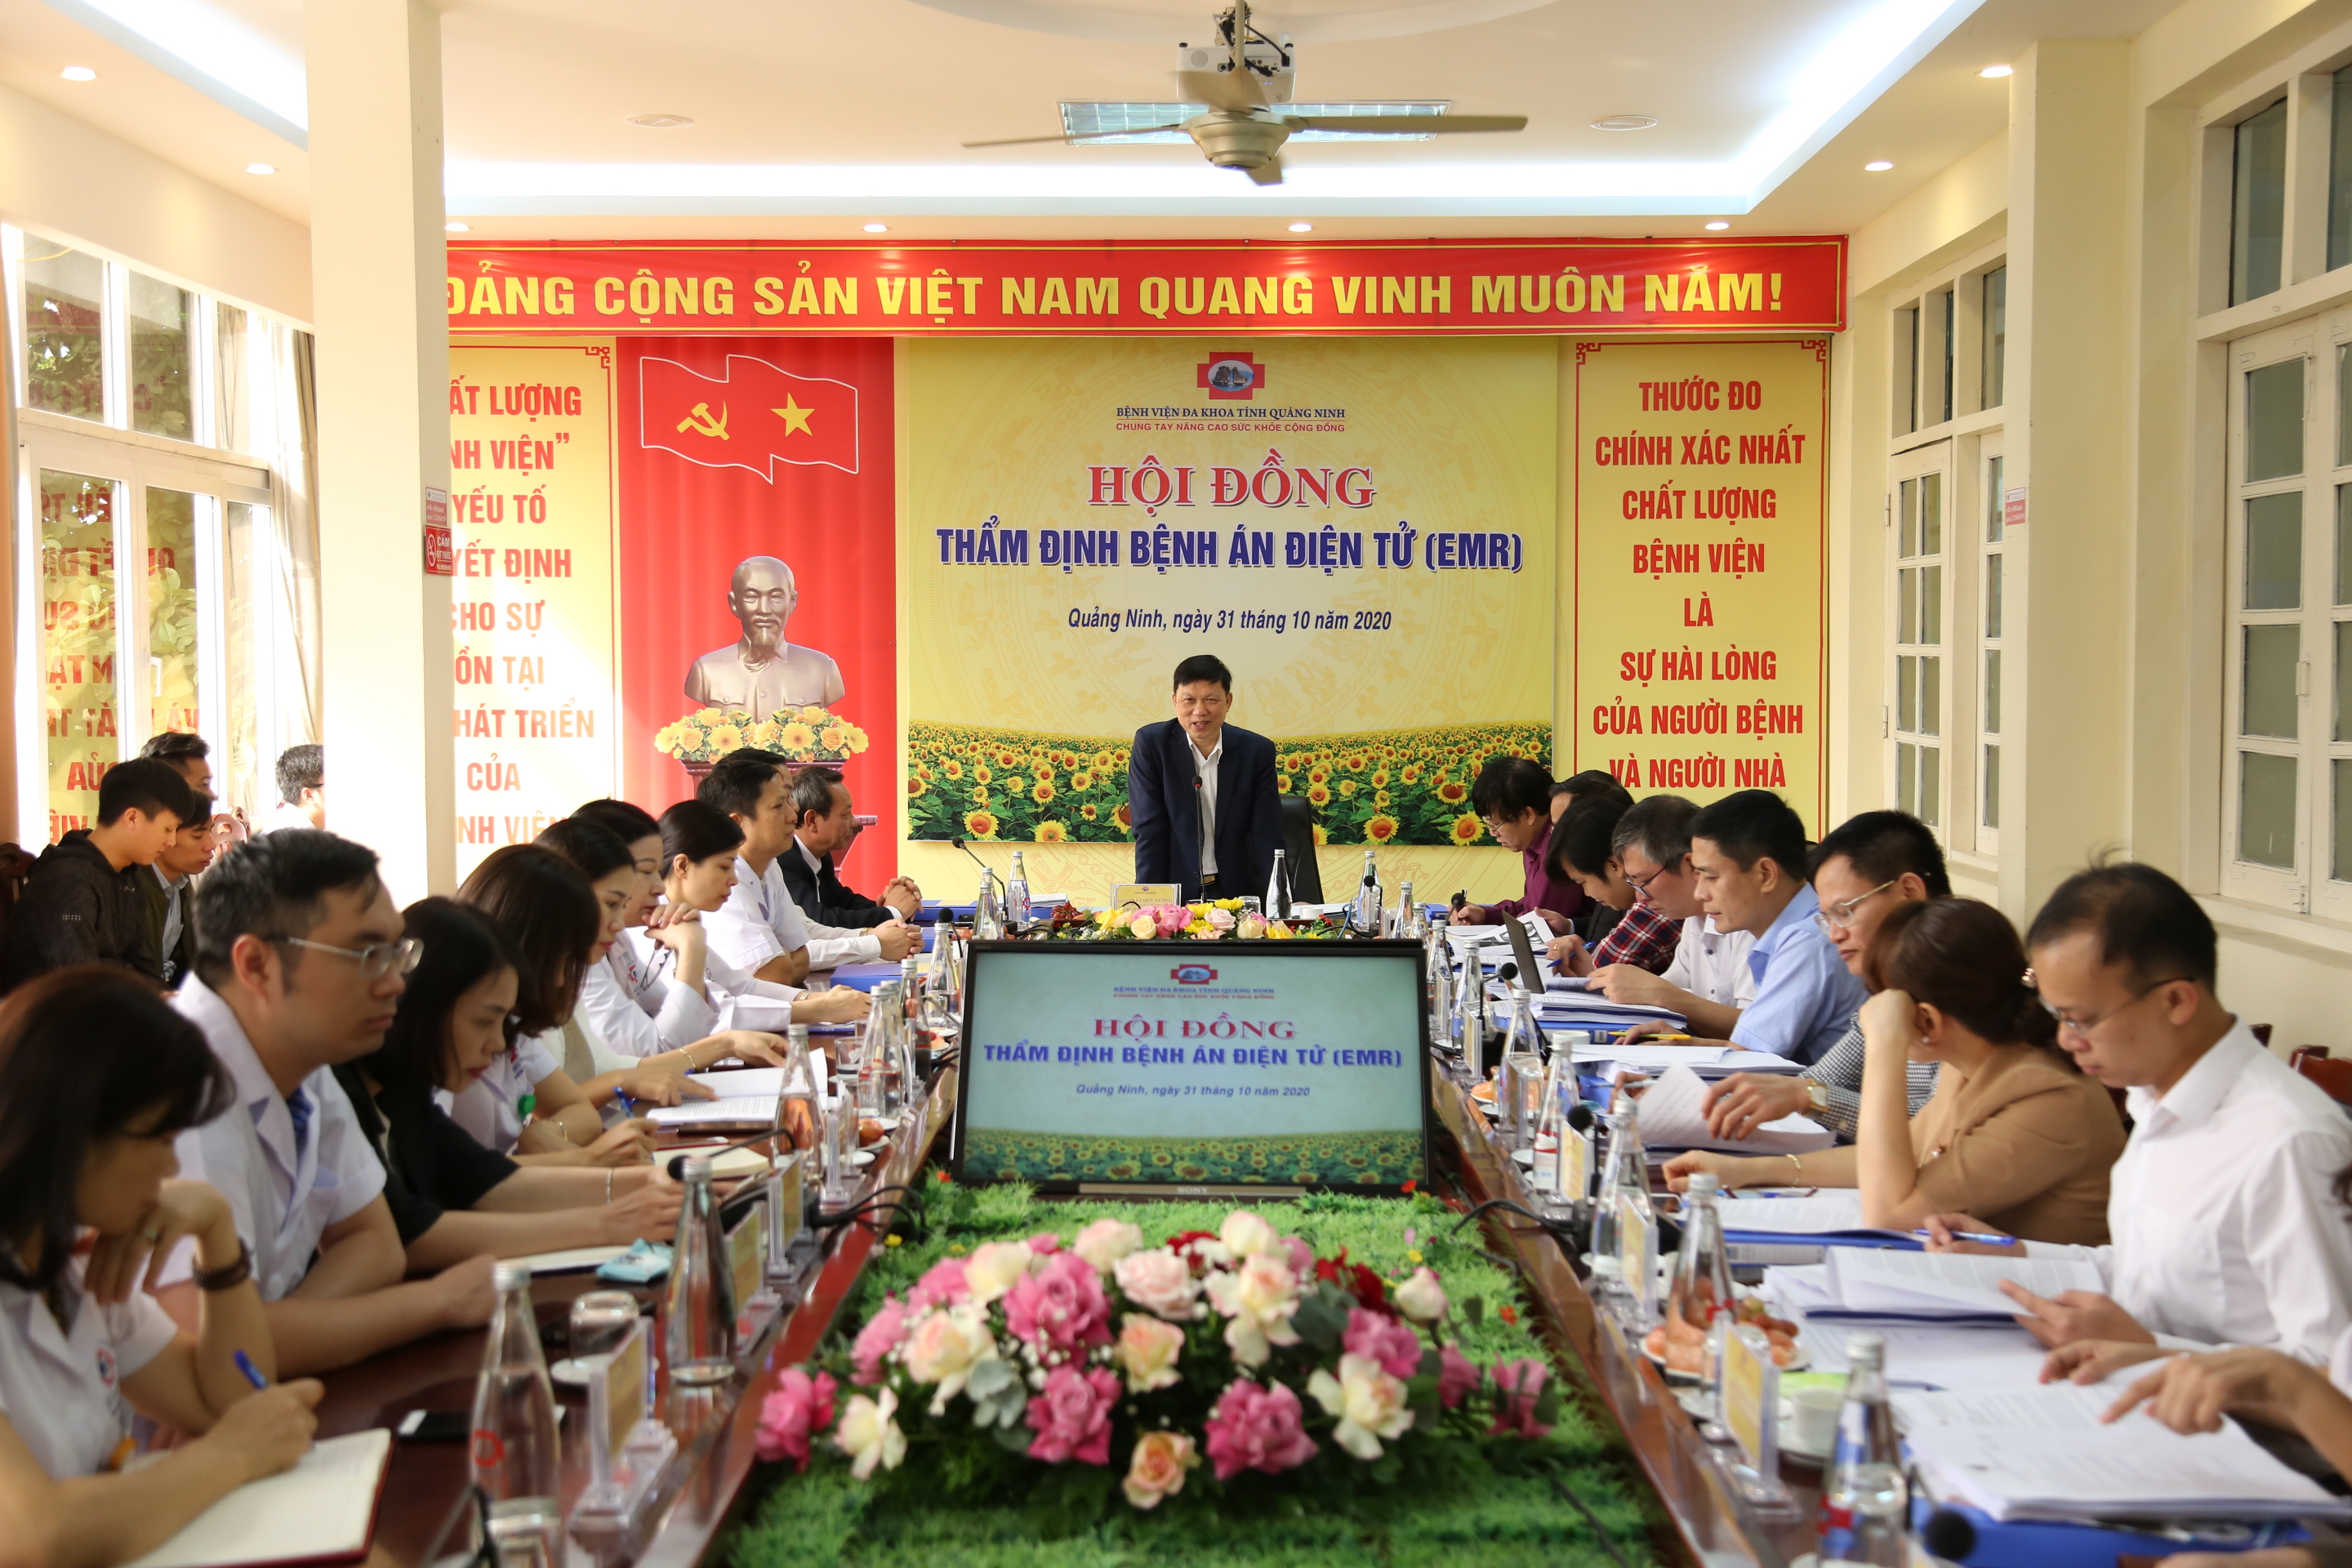 Bệnh viện Đa khoa tỉnh Quảng Ninh đạt tiêu chuẩn triển khai bệnh án điện tử